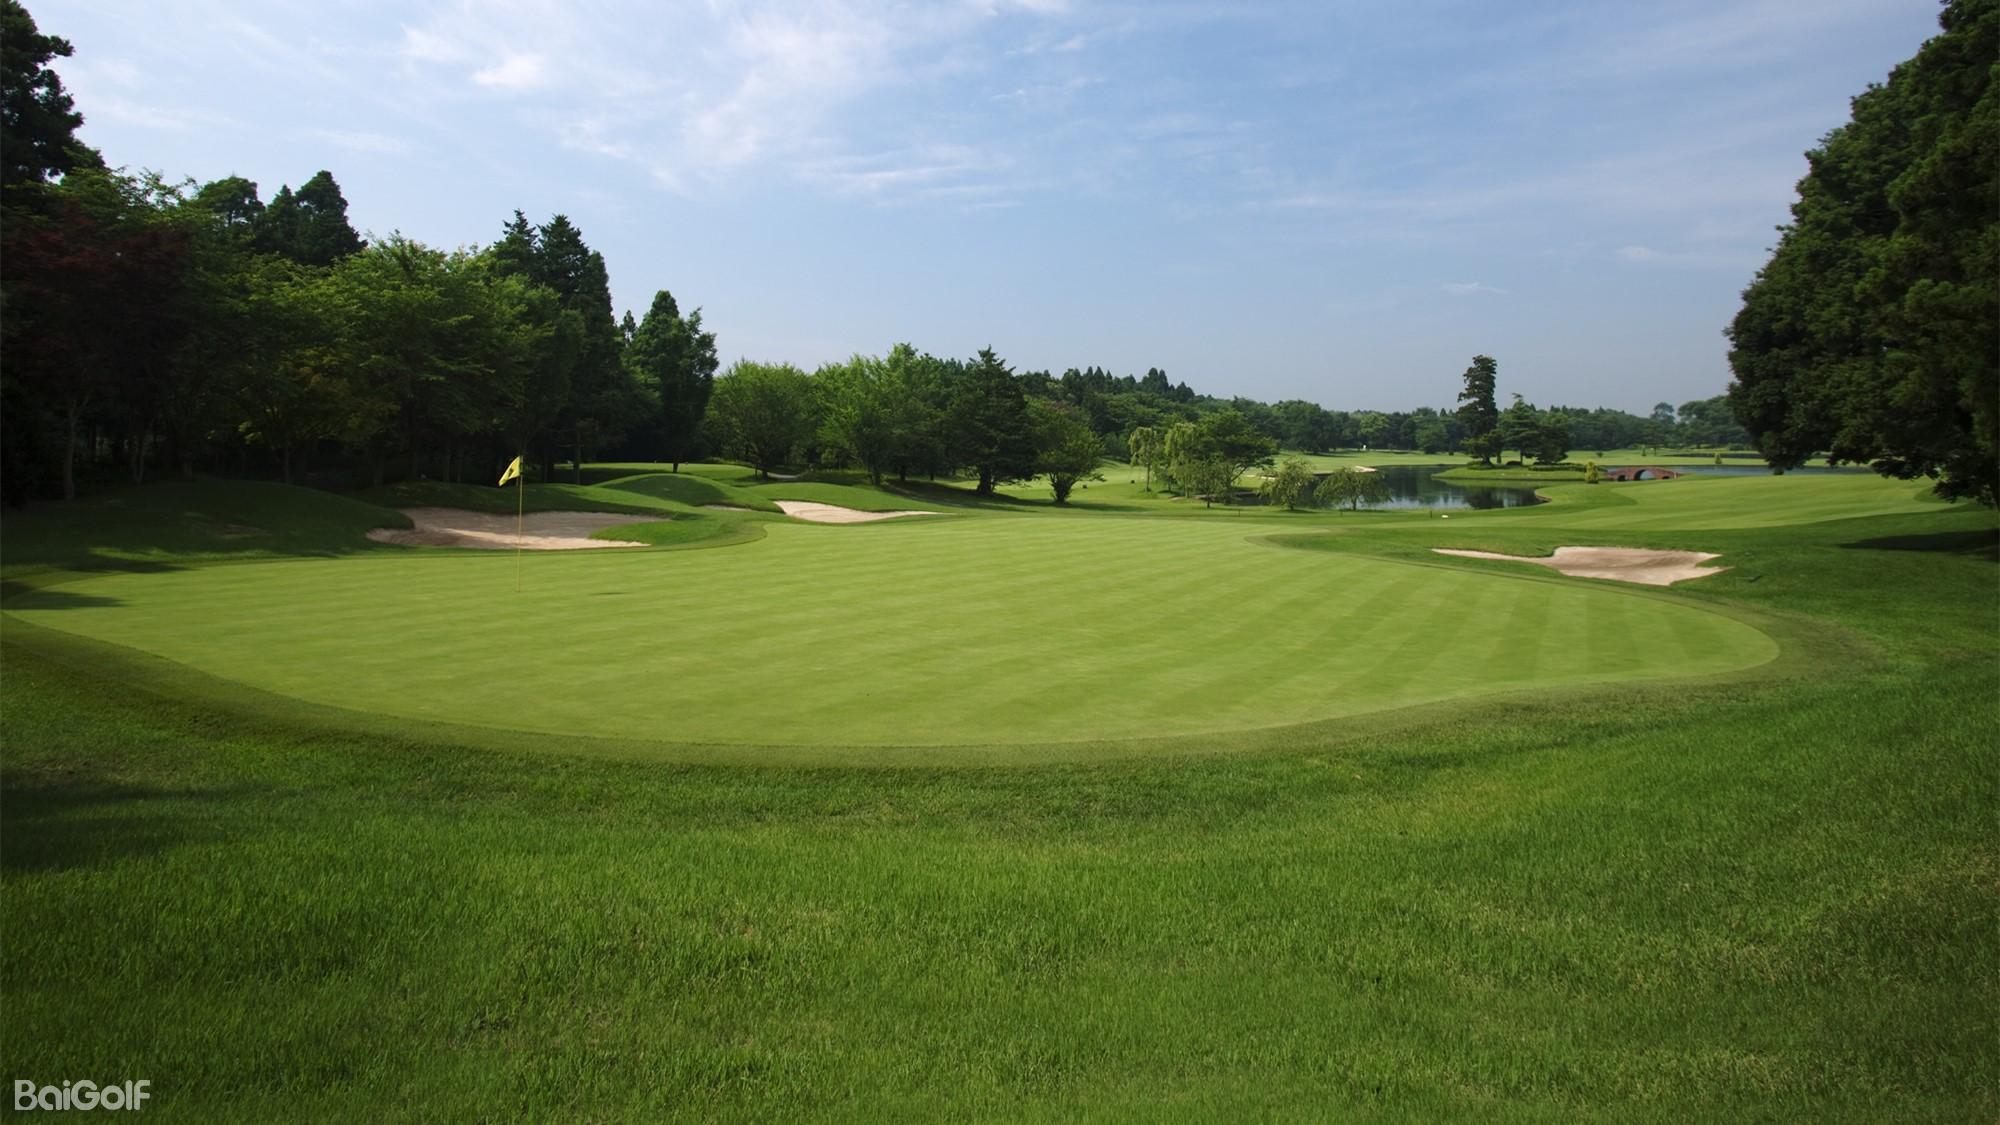 红山国际乡村俱乐部 | 百高（BaiGolf） - 高尔夫球场预订,高尔夫旅游,日本高尔夫,泰国高尔夫,越南高尔夫,中国,韩国,亚洲及太平洋高尔夫